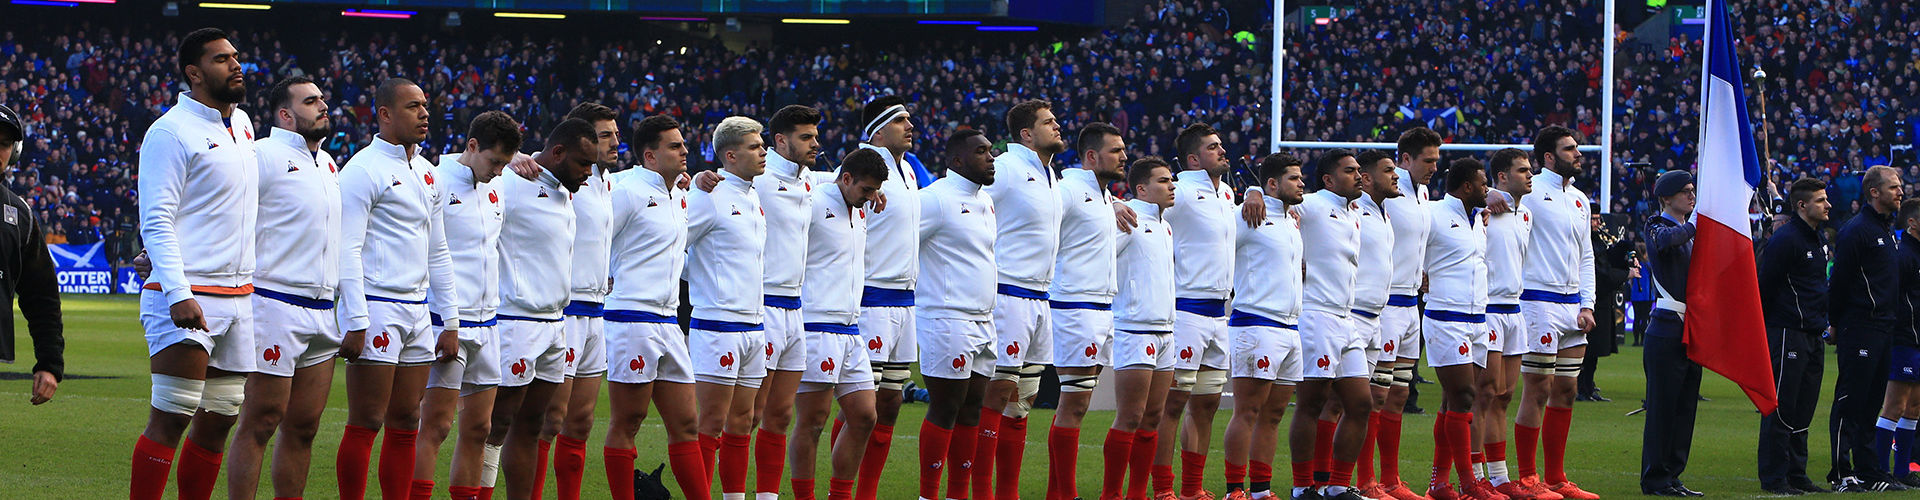 Maillot de equipe de France de Rugby personnalisé